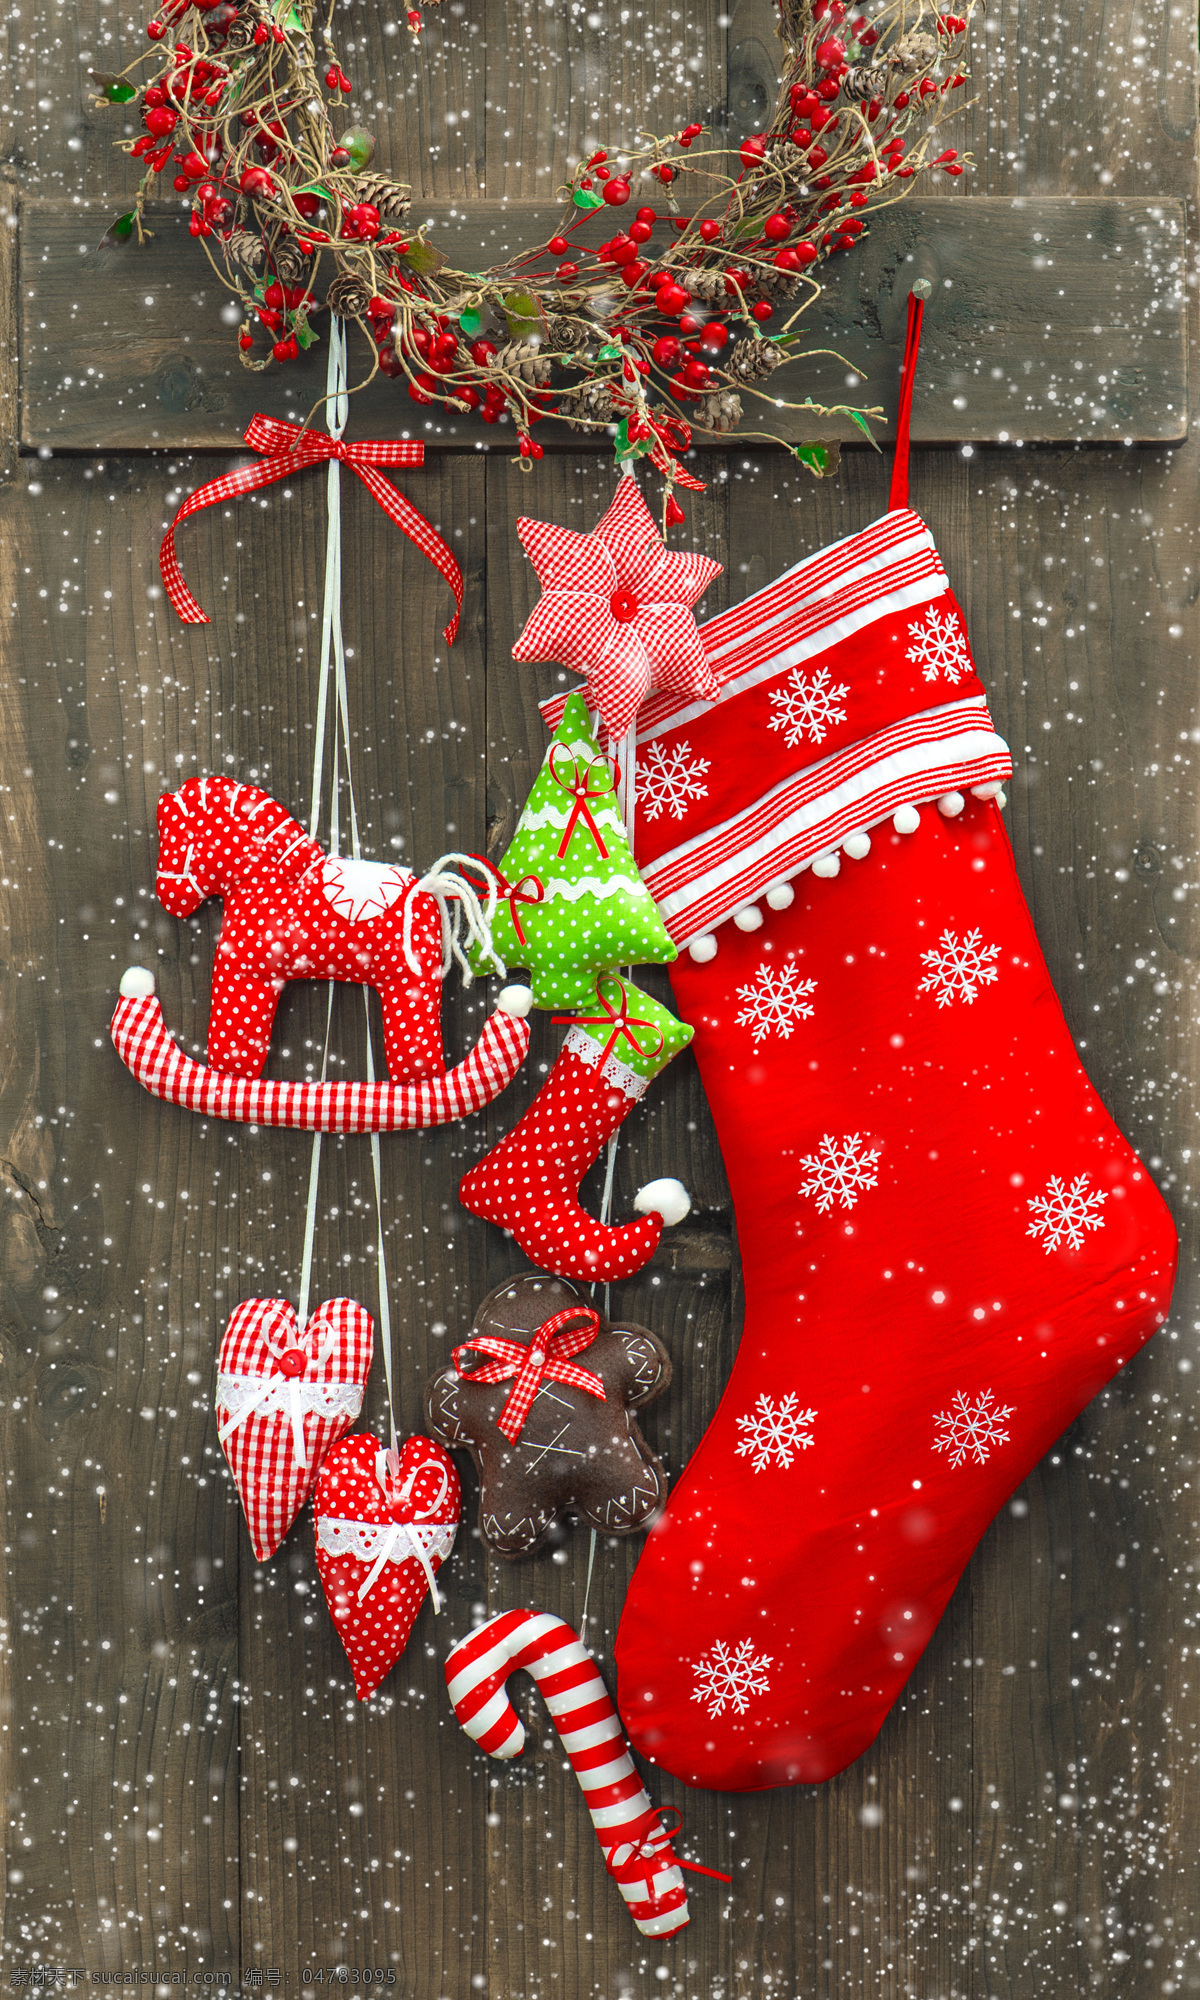 木板 上 圣诞 袜 木纹 圣诞袜 圣诞鹿 袜子 圣诞节 圣诞节素材 圣诞节背景 节日素材 节日庆典 生活百科